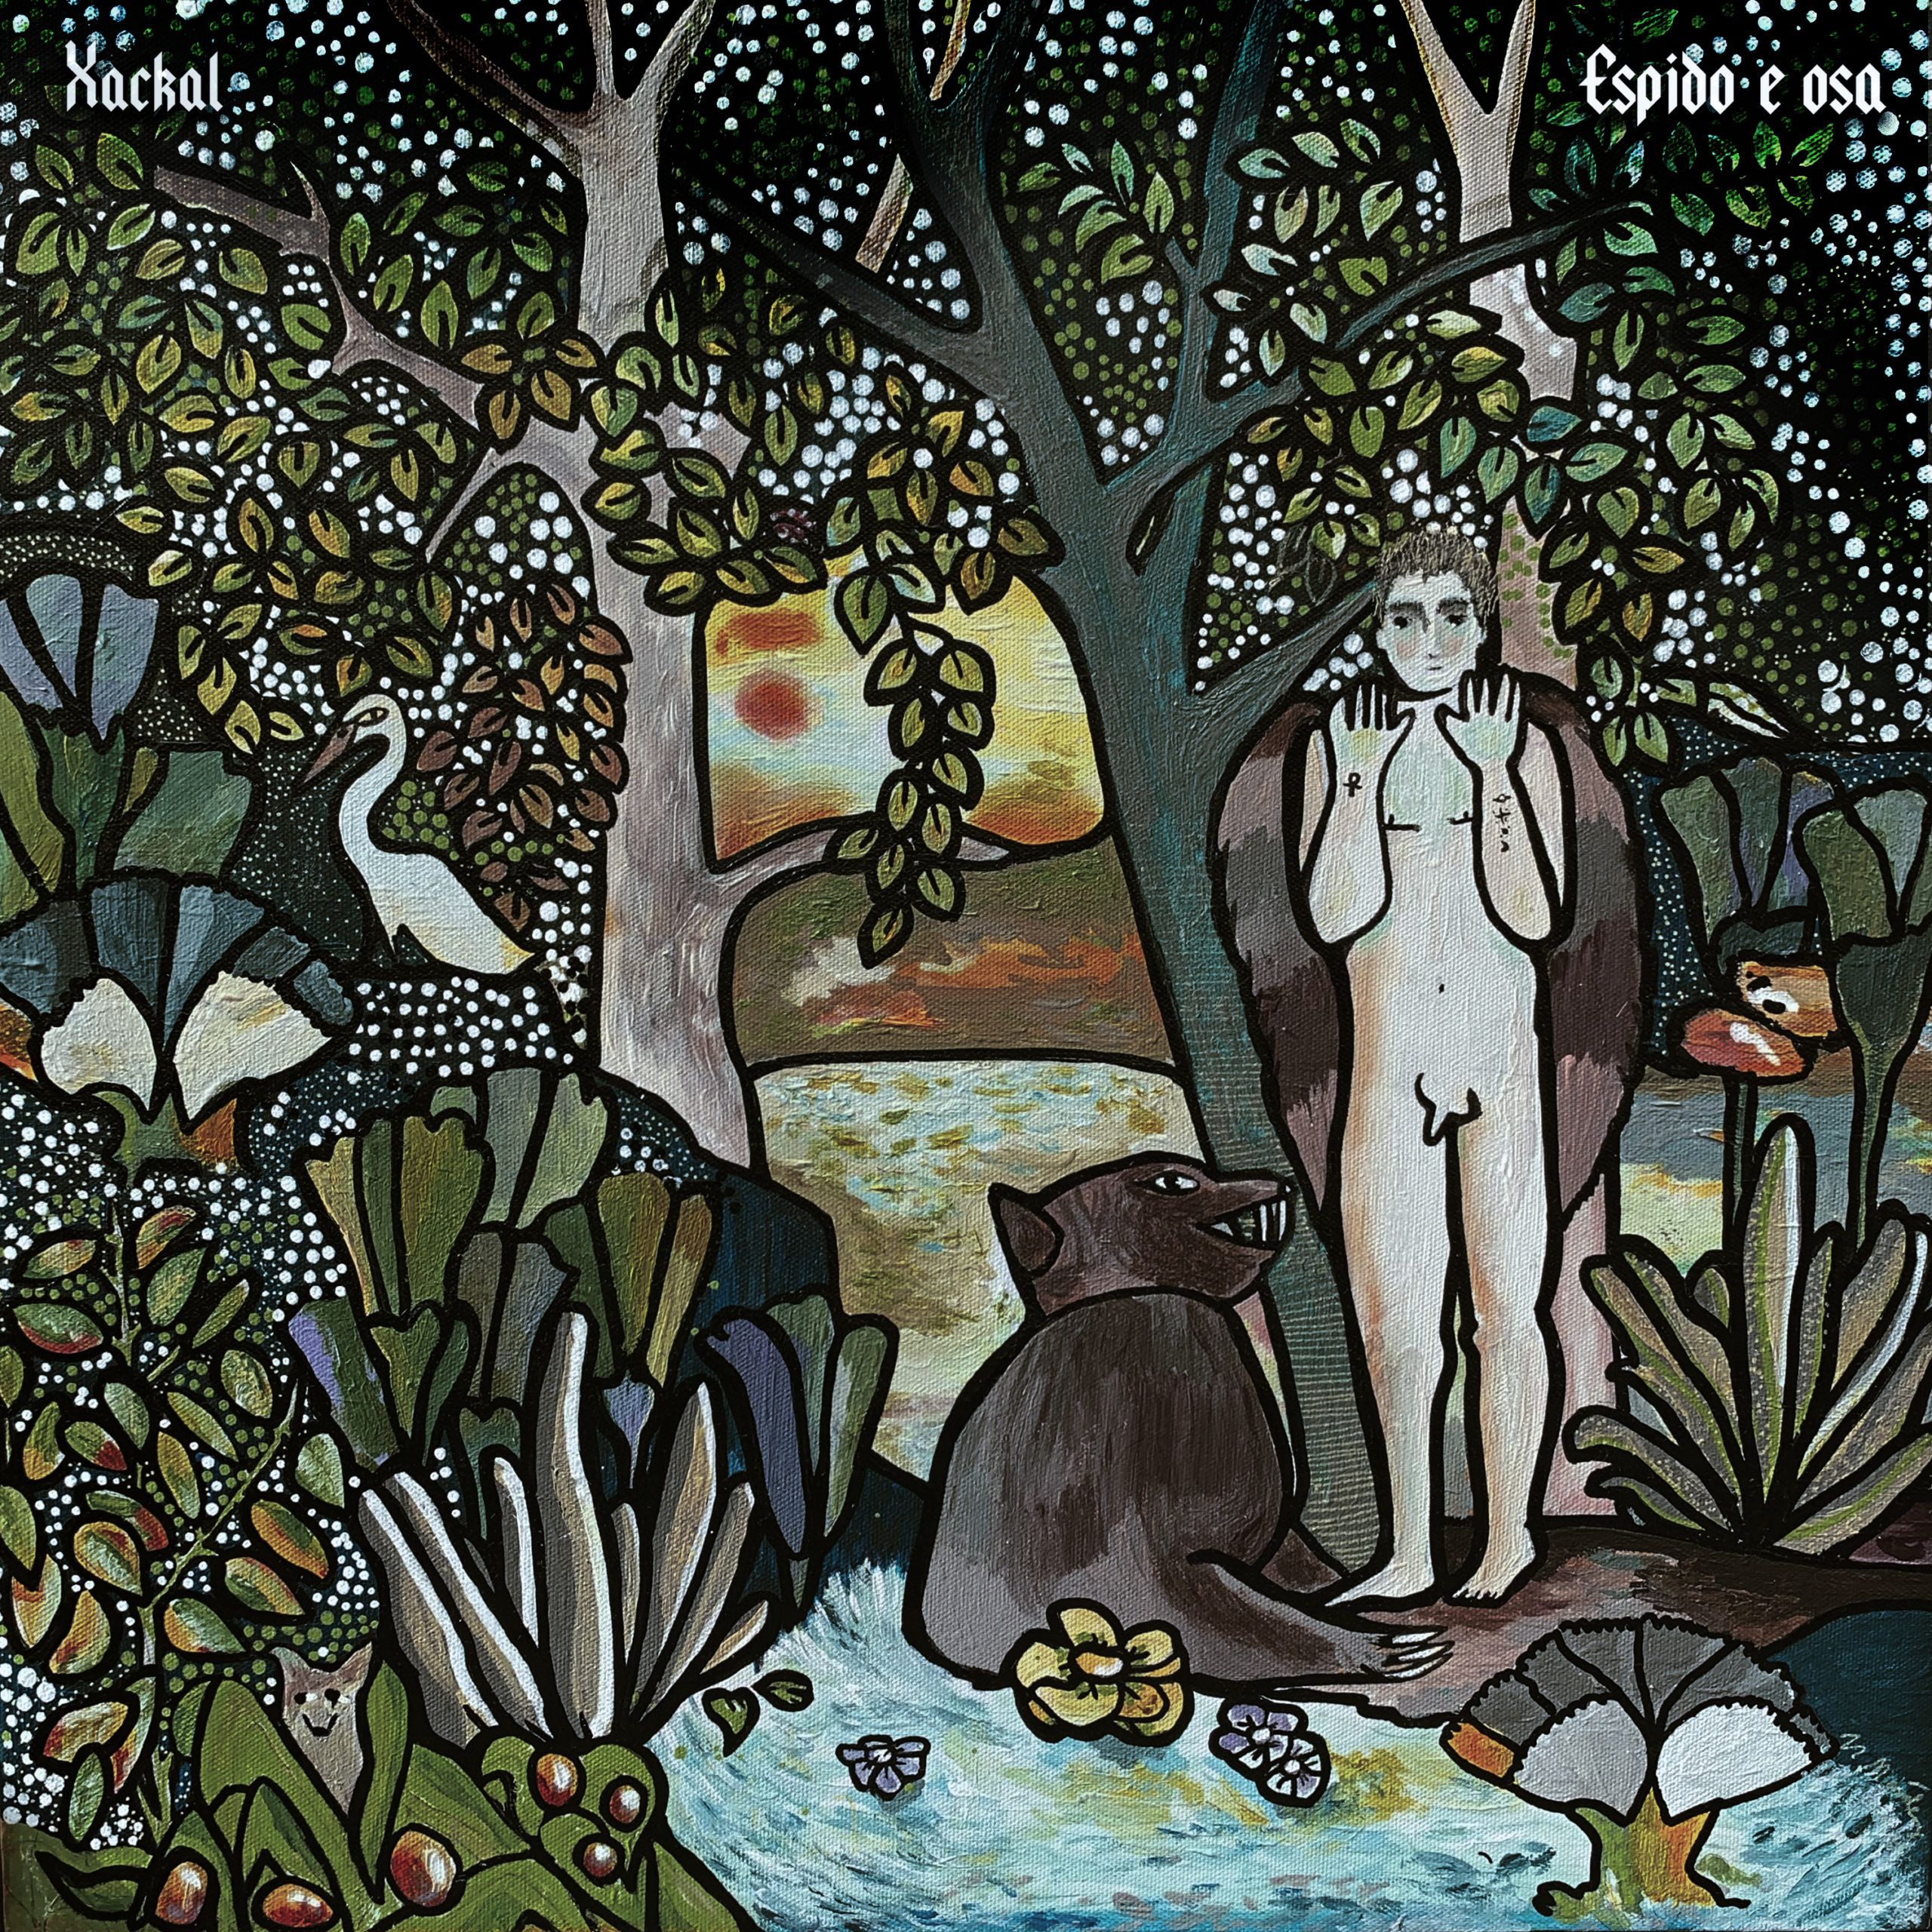 Portada de "Espido e osa", tercer álbum de Xackal